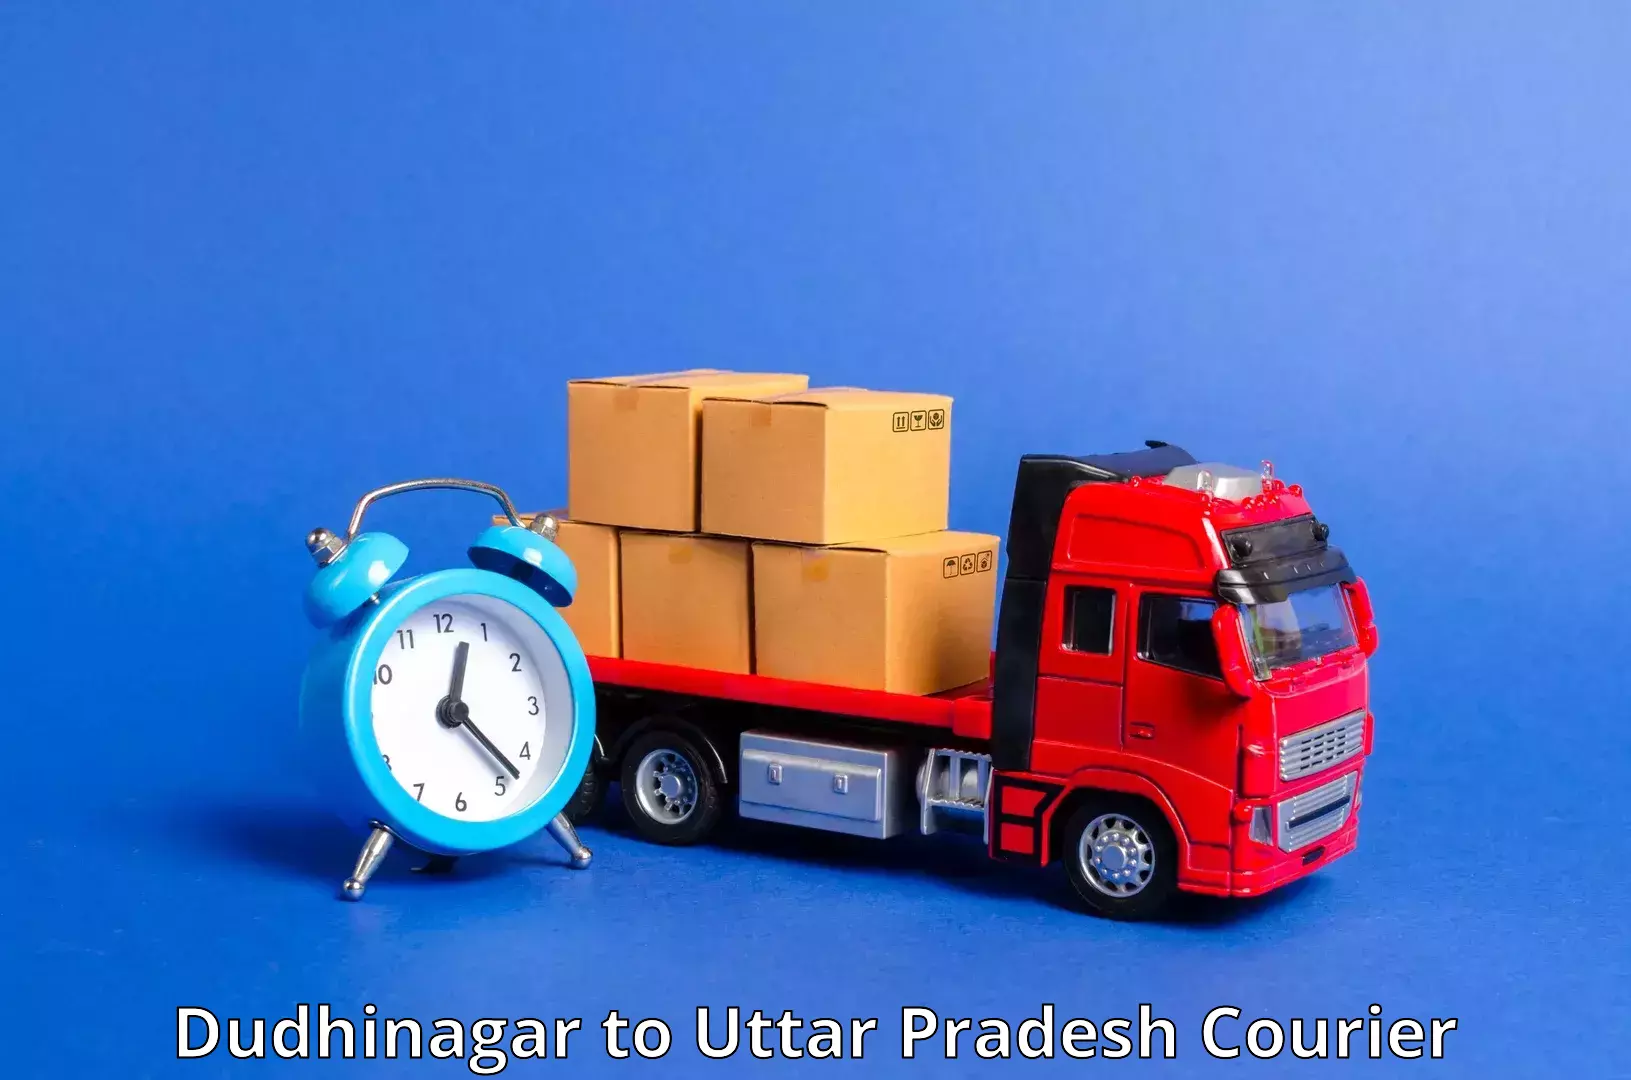 Speedy delivery service in Dudhinagar to Badlapur